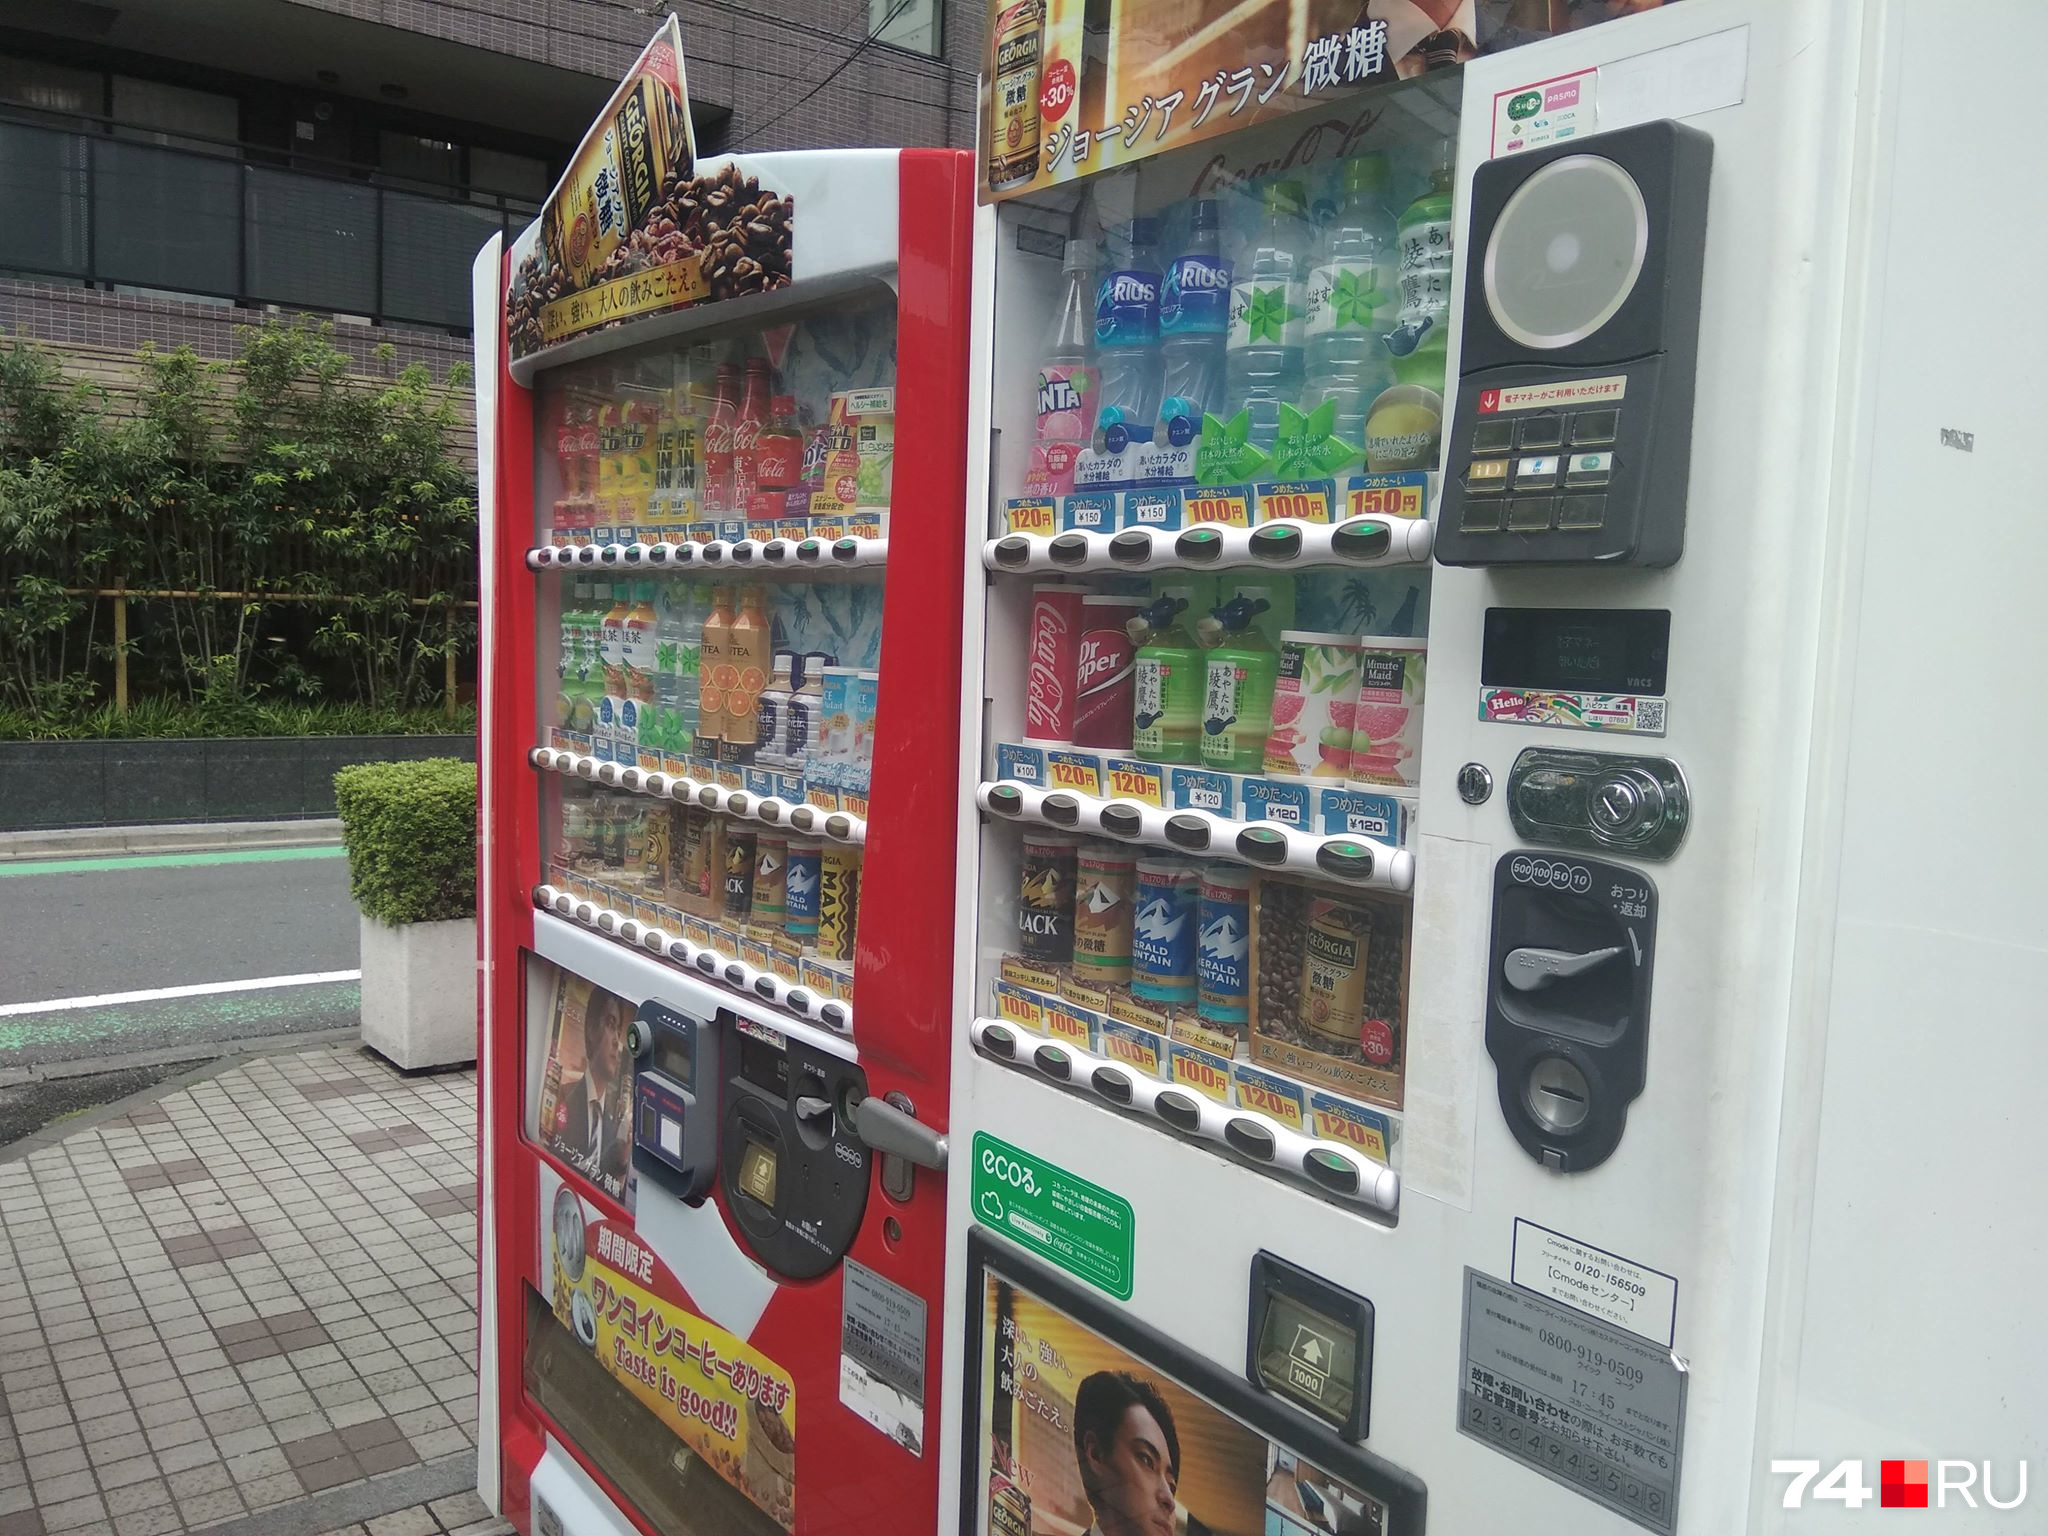 Автоматы с напитками в Японии повсюду. Впрочем, в Челябинске ими тоже уже мало кого удивишь <br>